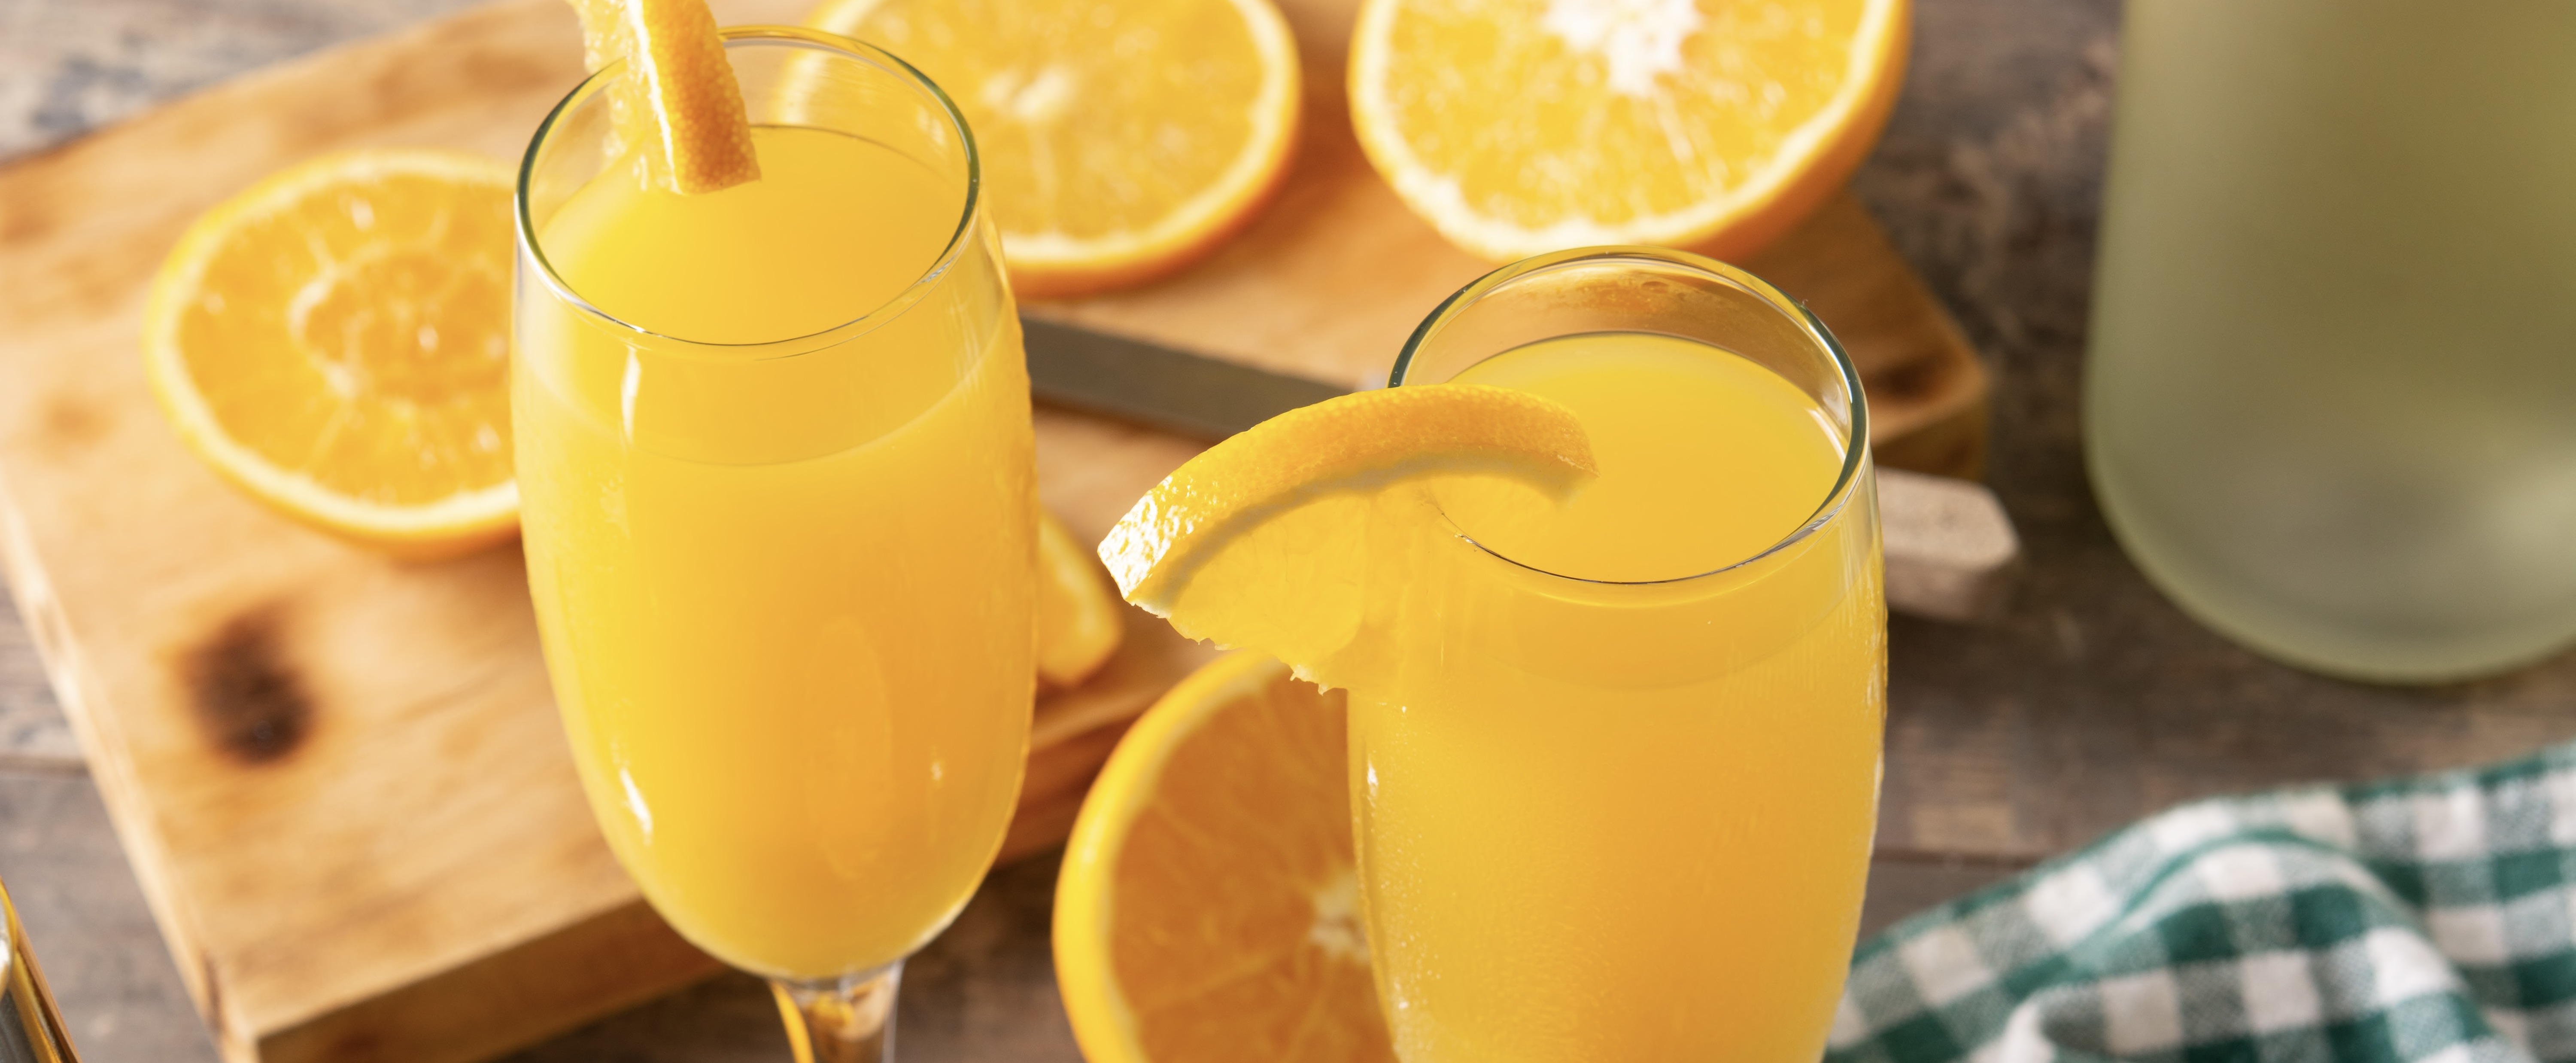 Fokking makkelijk recept: trap het weekend alvast af met deze mimosa